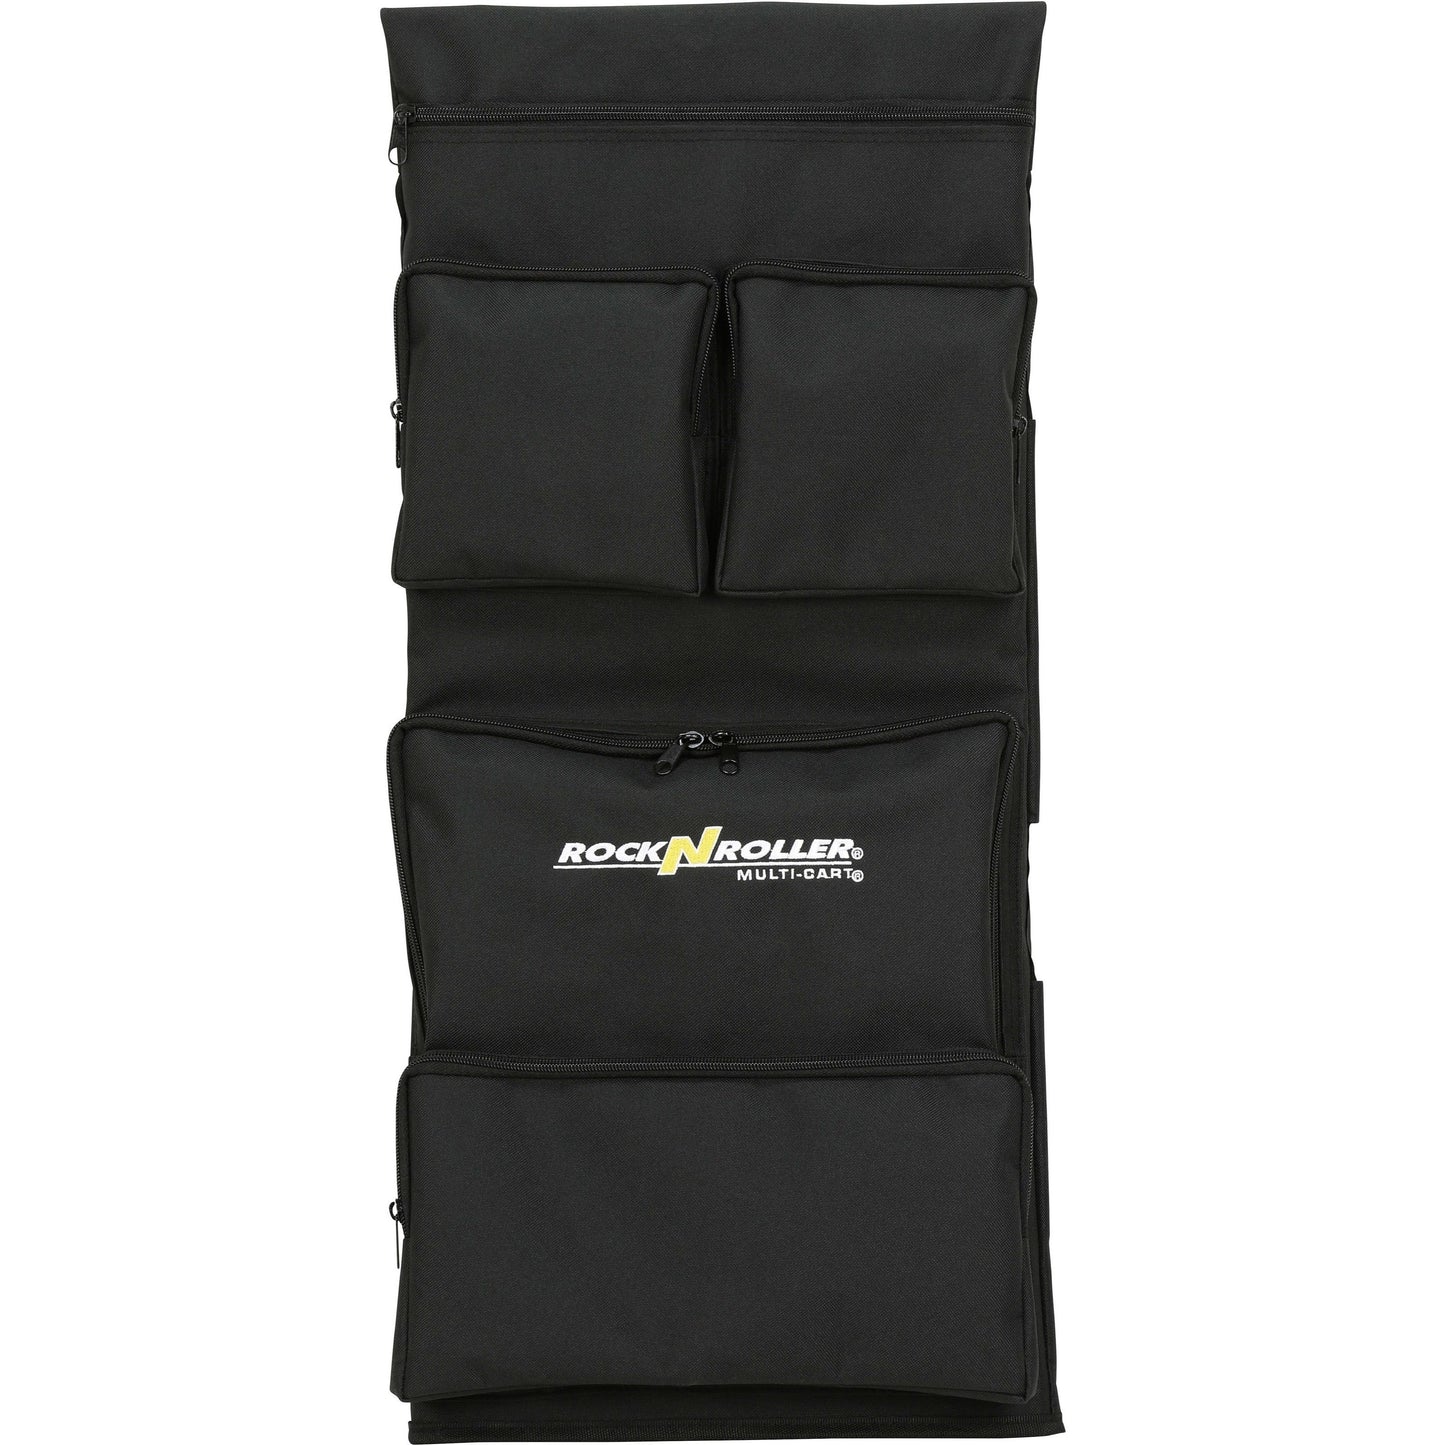 RocknRoller Tool/Accessory Bag, RSA-TAB8, Medium